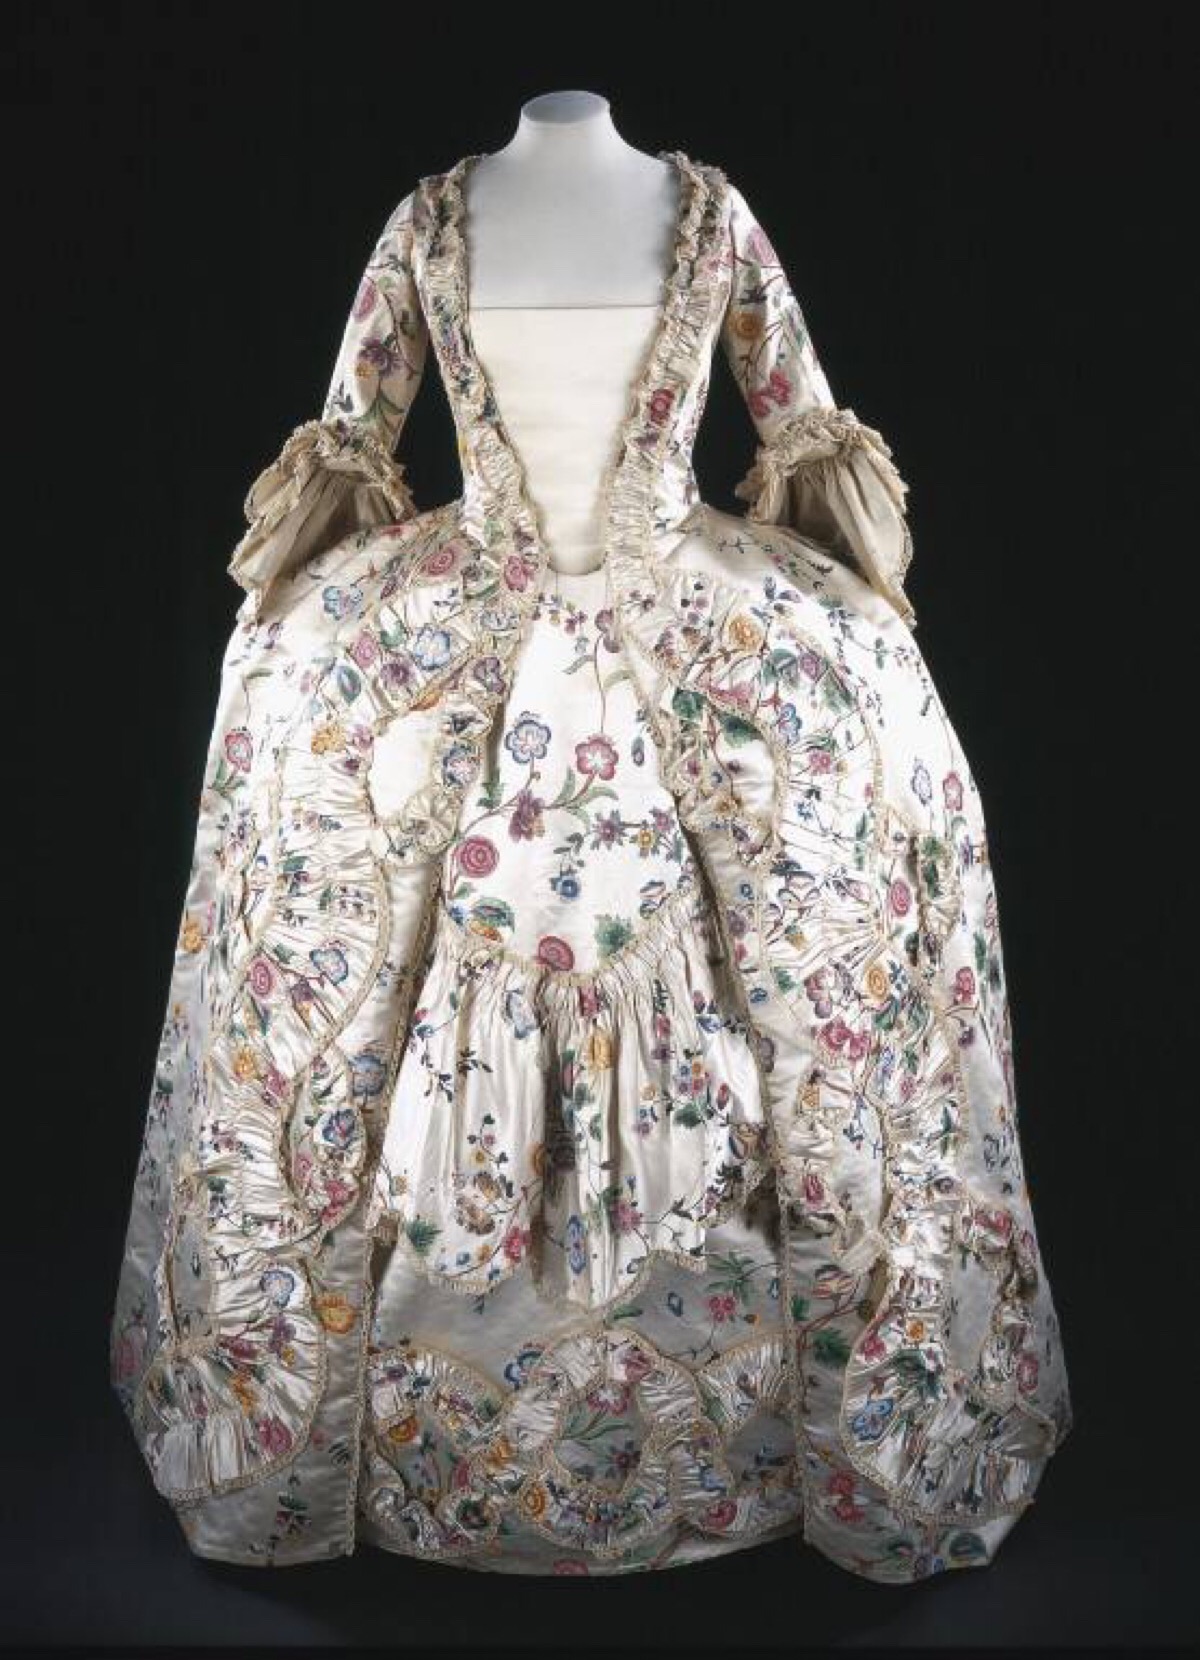 法式女袍,1760s,英国,v&a博物馆.